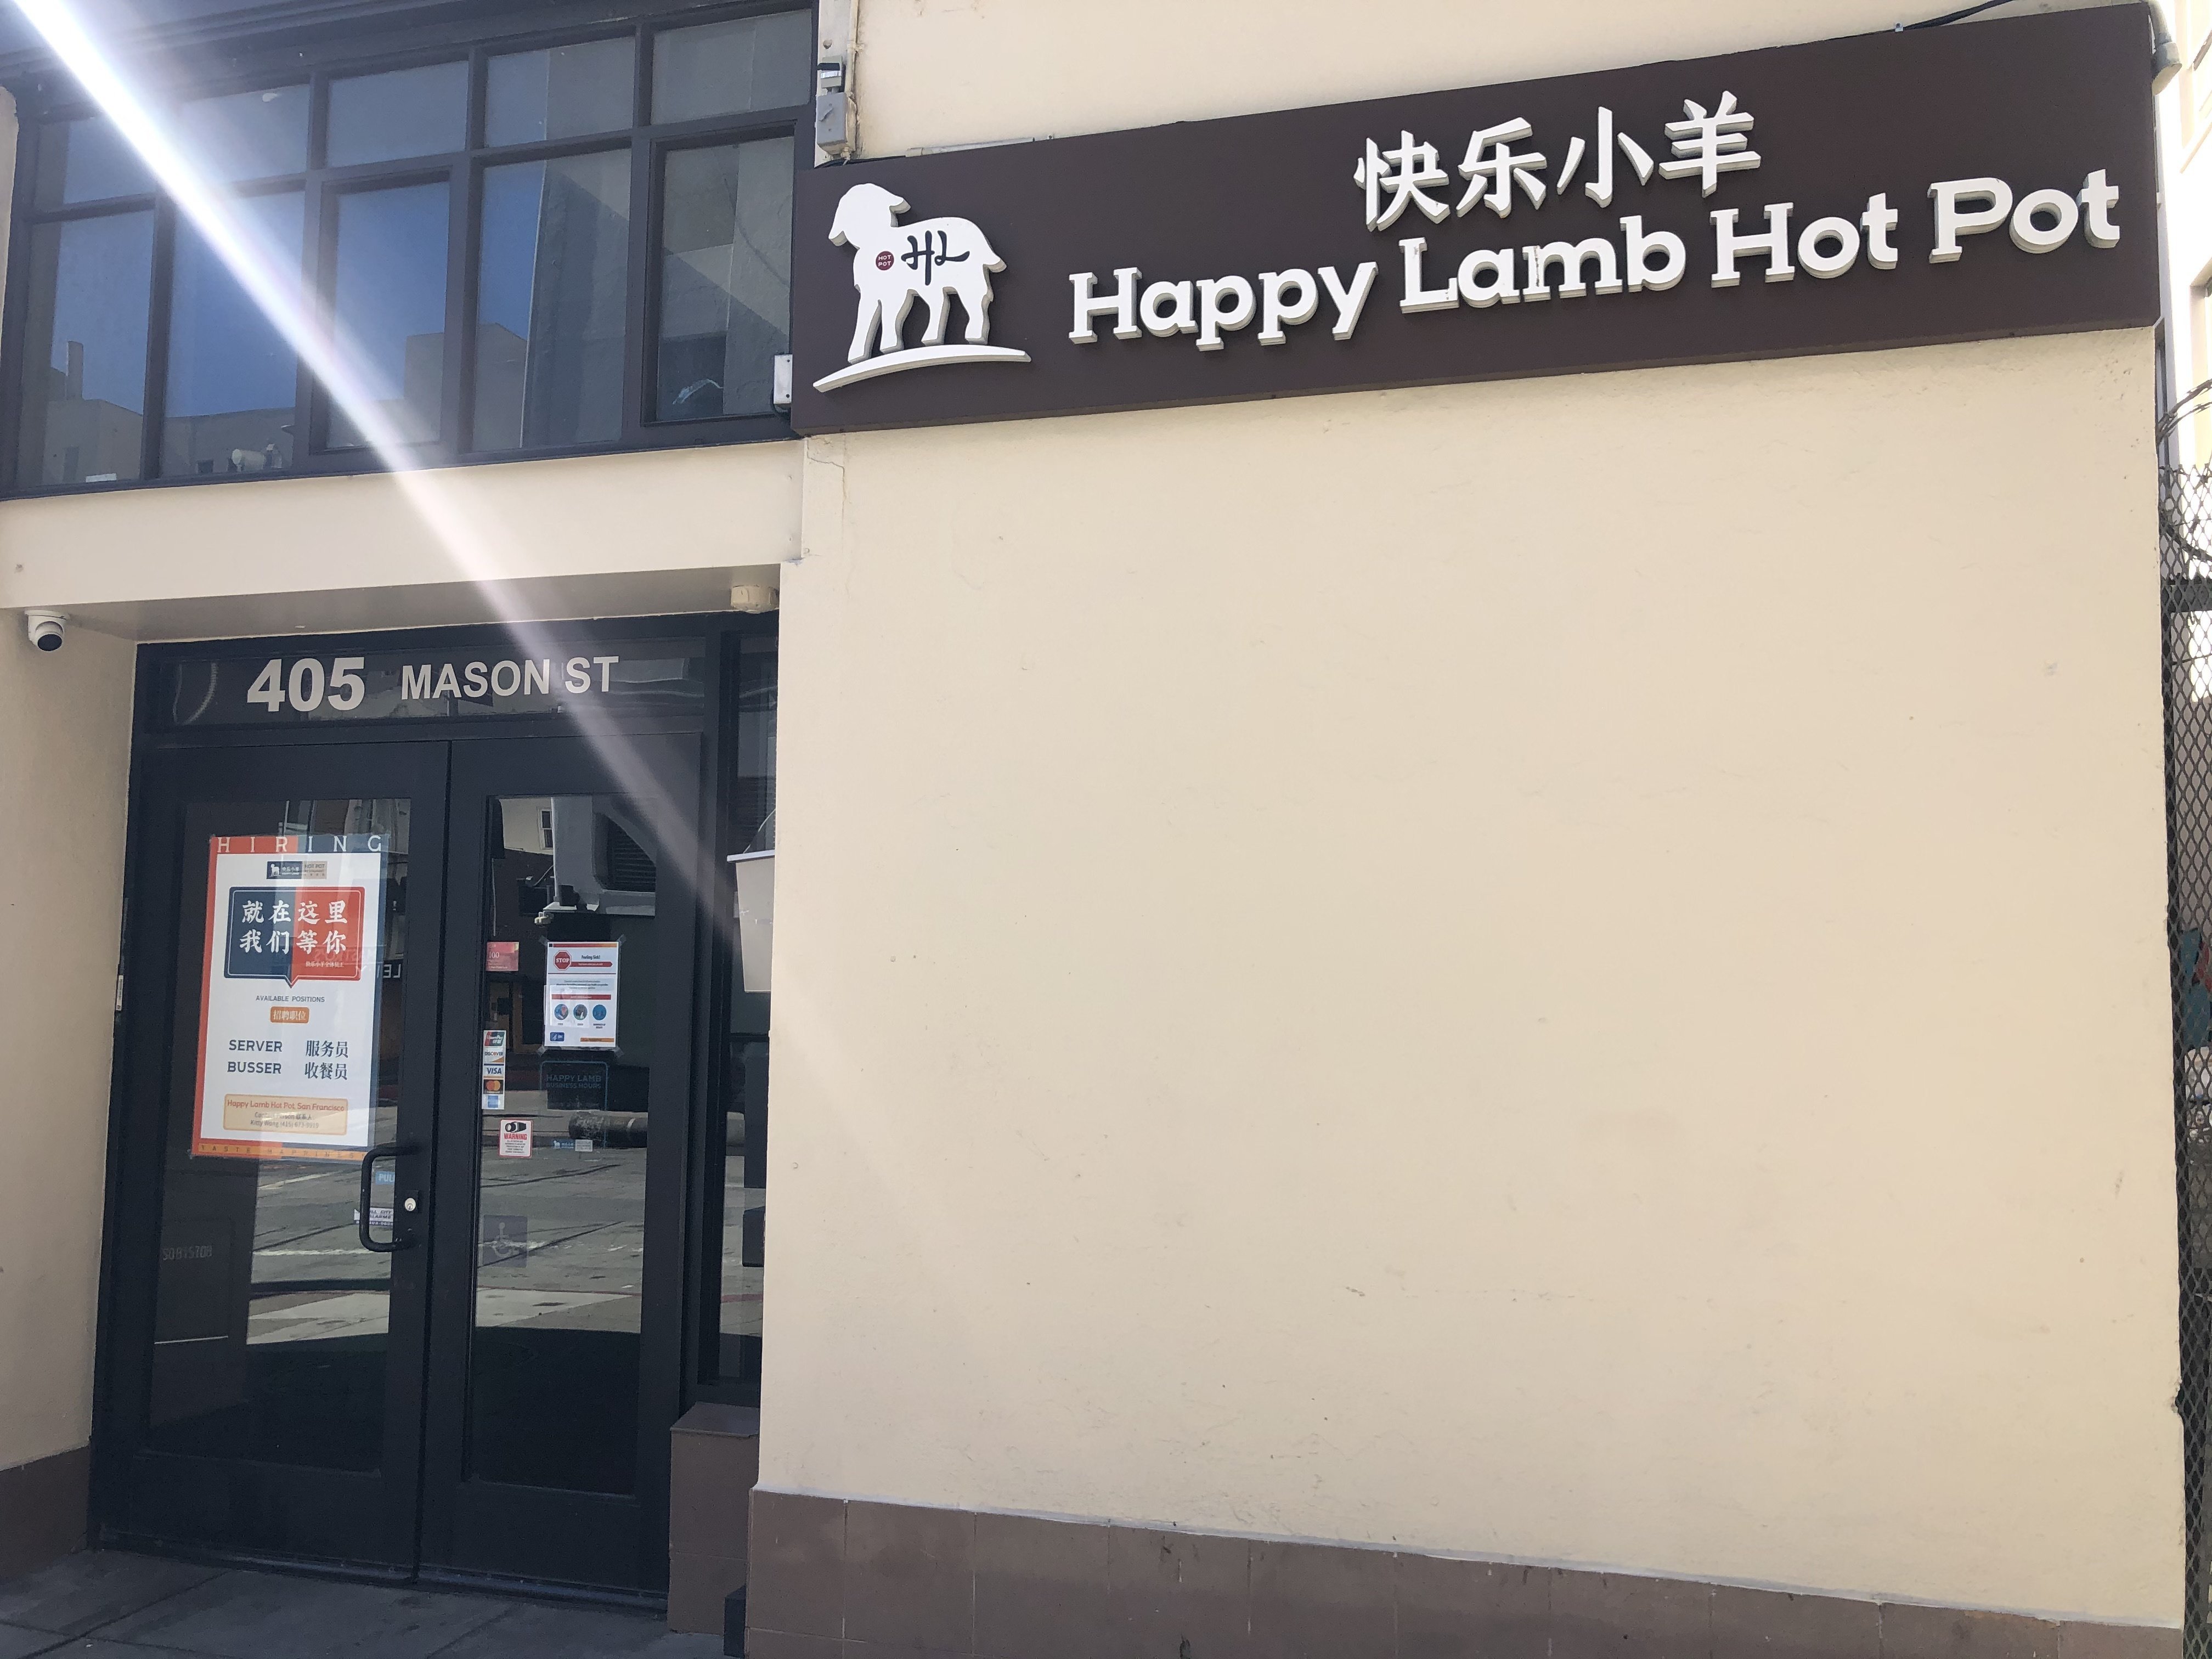 Happy Lamb Hot Pot San Francisco 快乐小羊 -  San Francisco